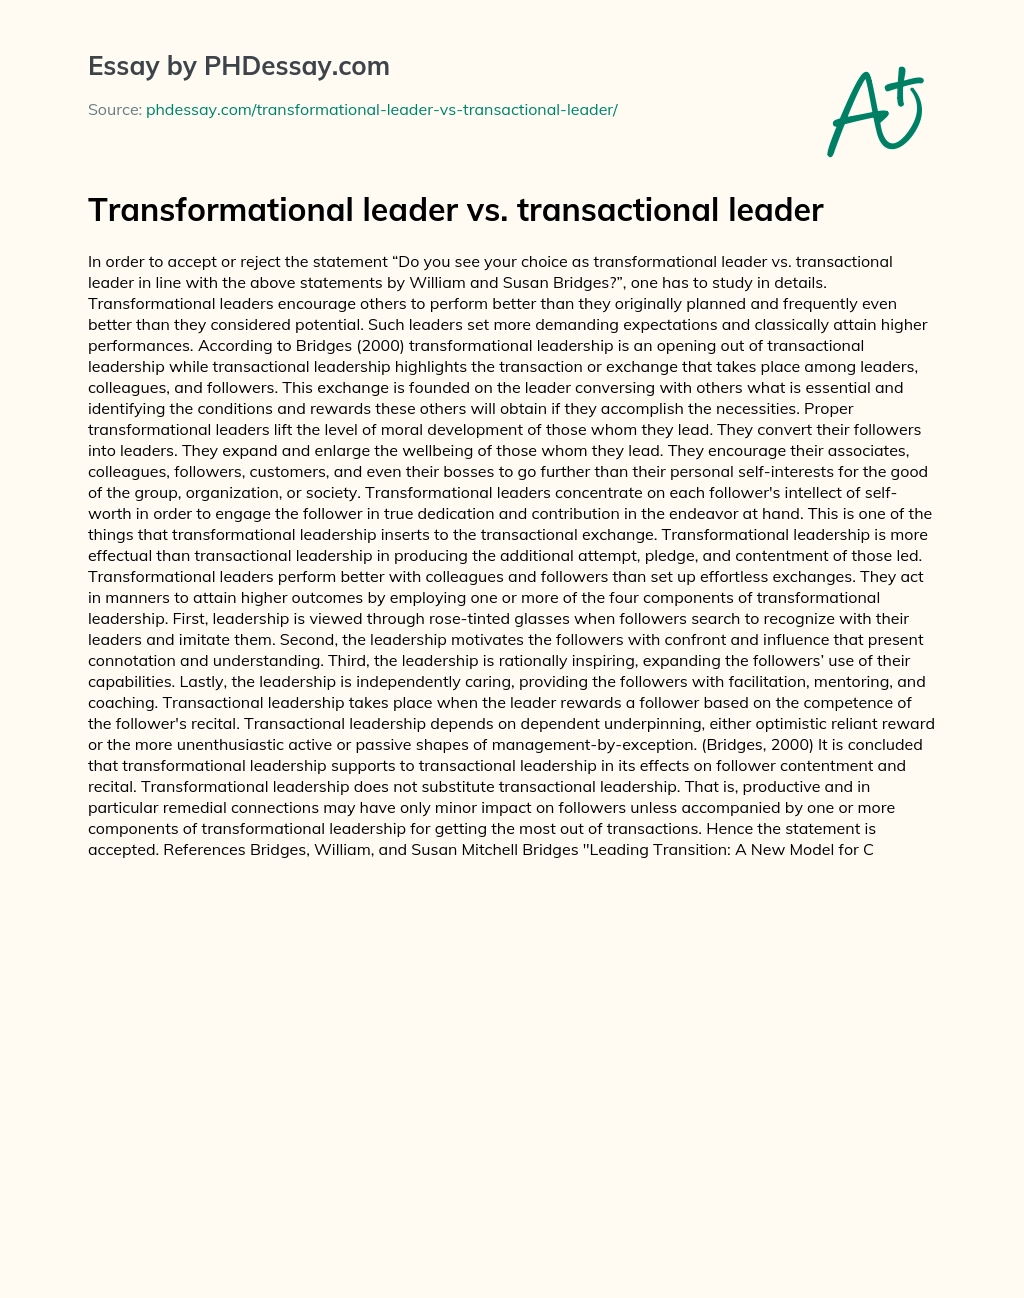 Transformational leader vs. transactional leader essay